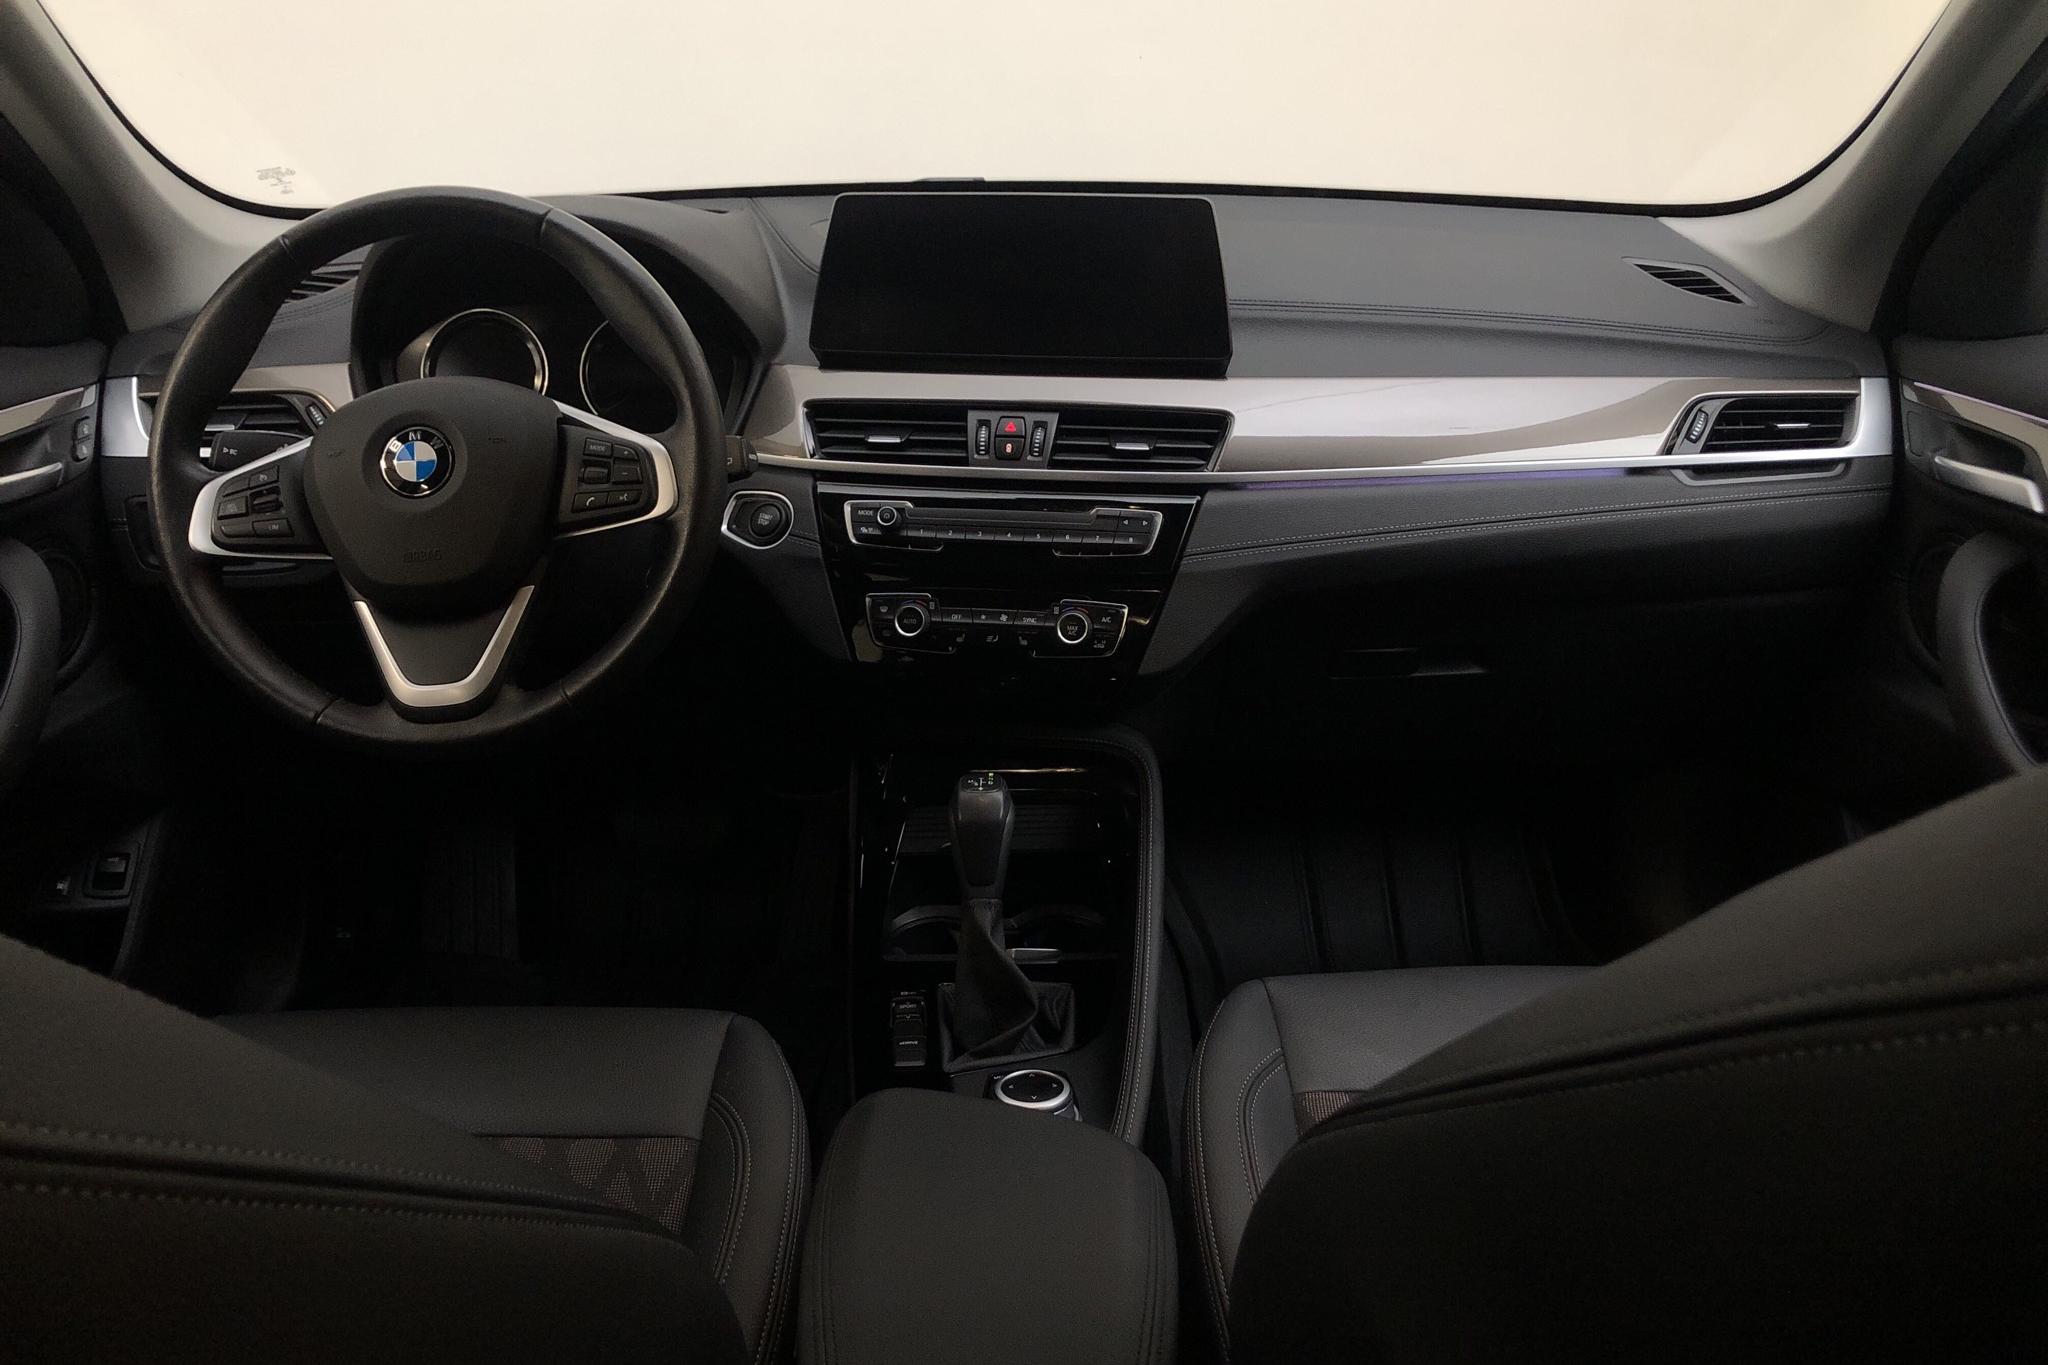 BMW X1 xDrive25e 9,7 kWh LCI, F48 (220hk) - 36 280 km - Automatic - black - 2021